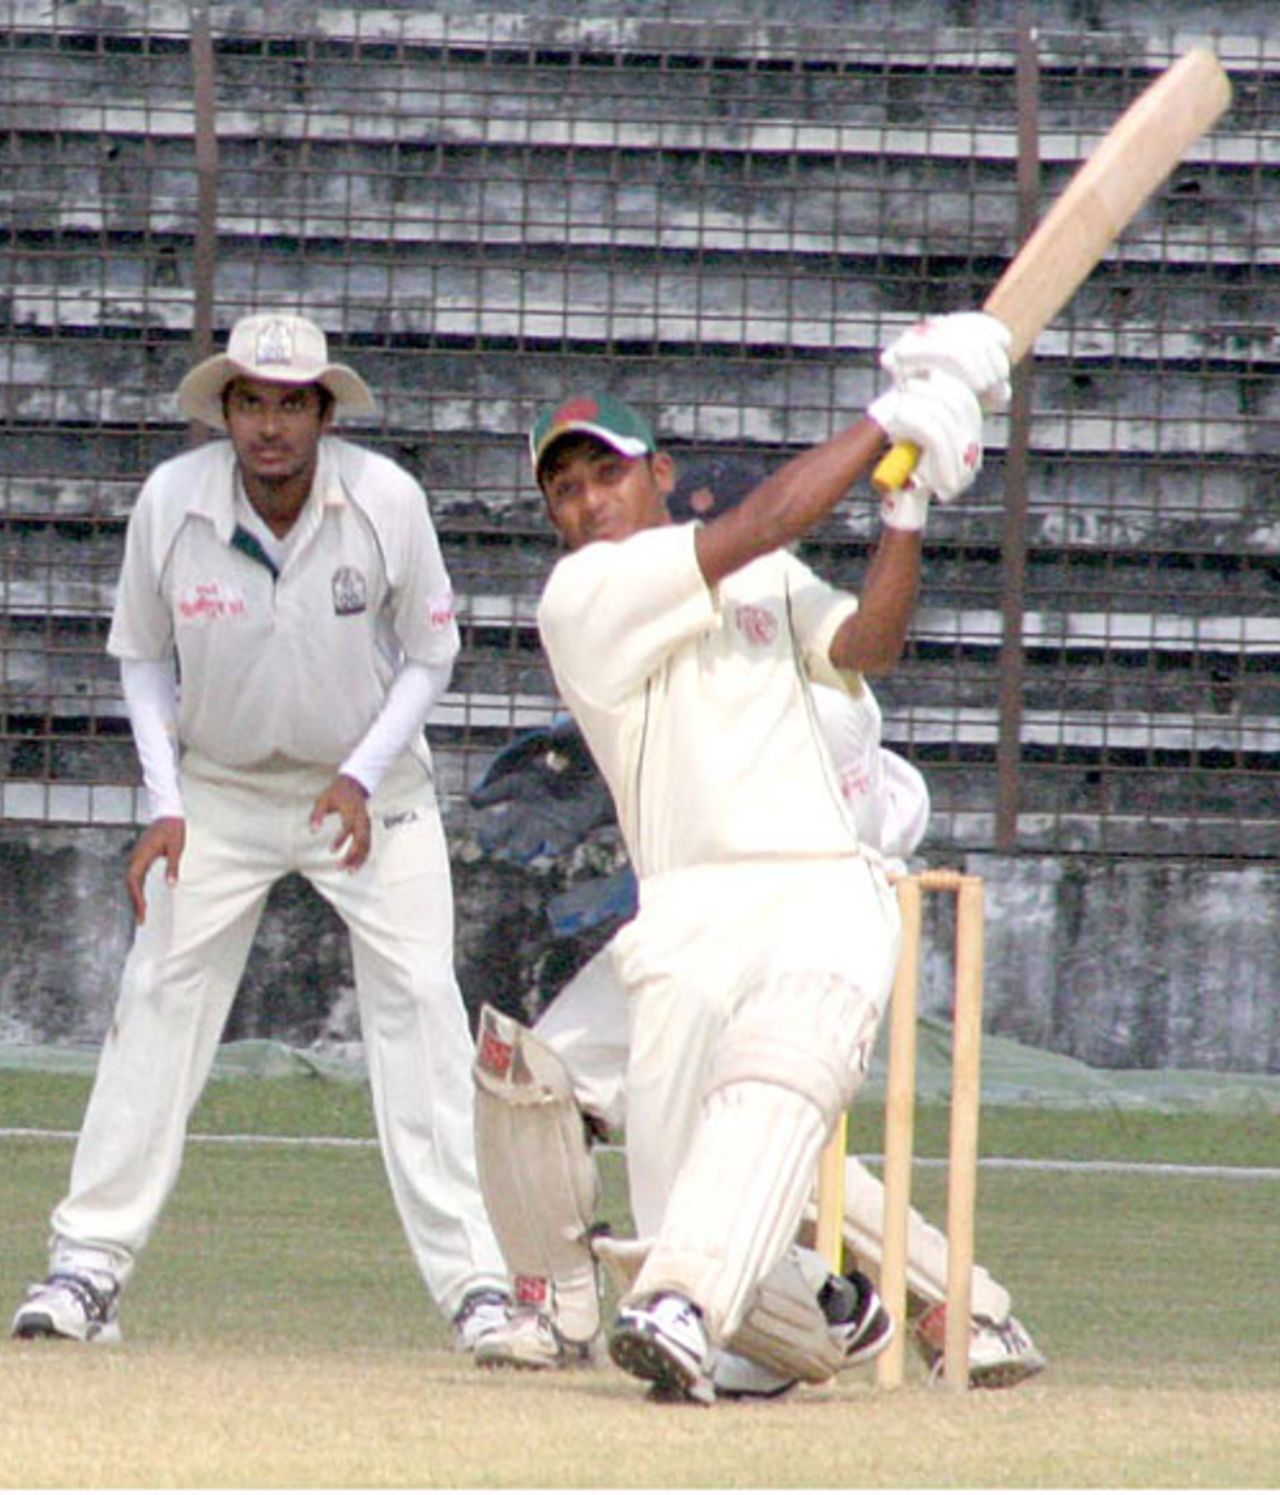 Rajshahi allrounder Farhad Reza hit 52, Rajshahi v Barisal, National Cricket League, October 27, 2007